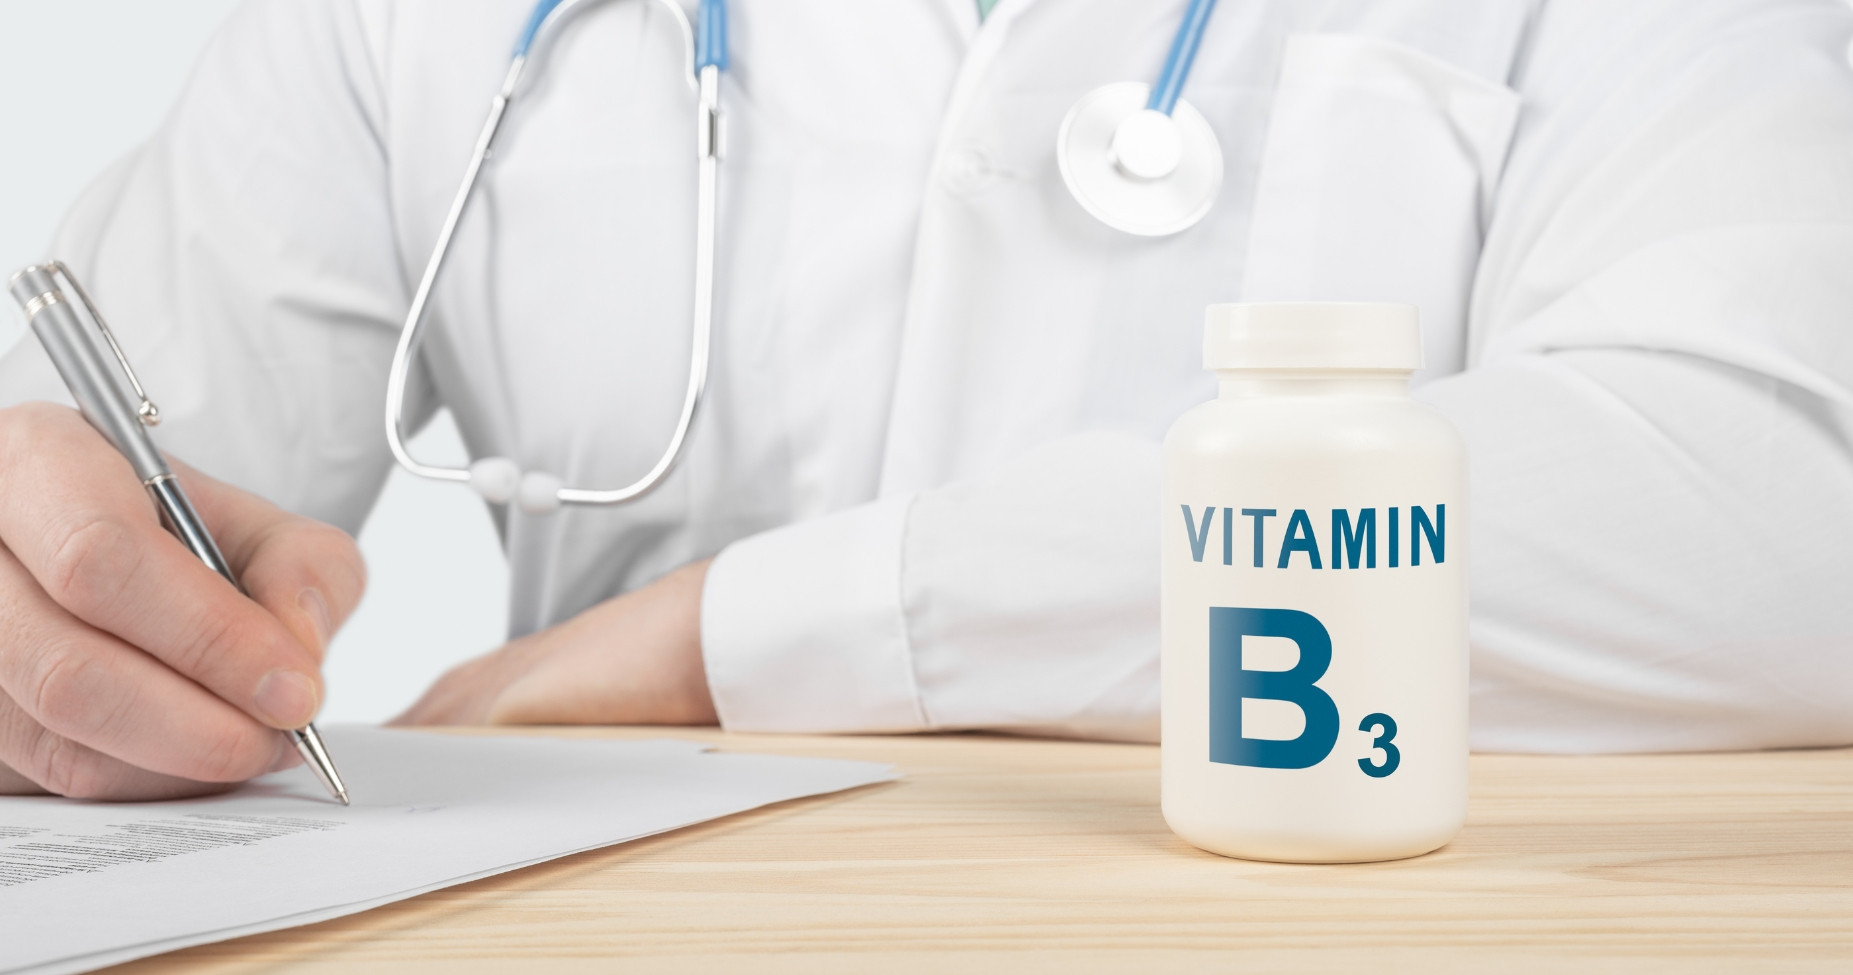 Thiếu vitamin B3 gây bệnh gì cho cơ thể?